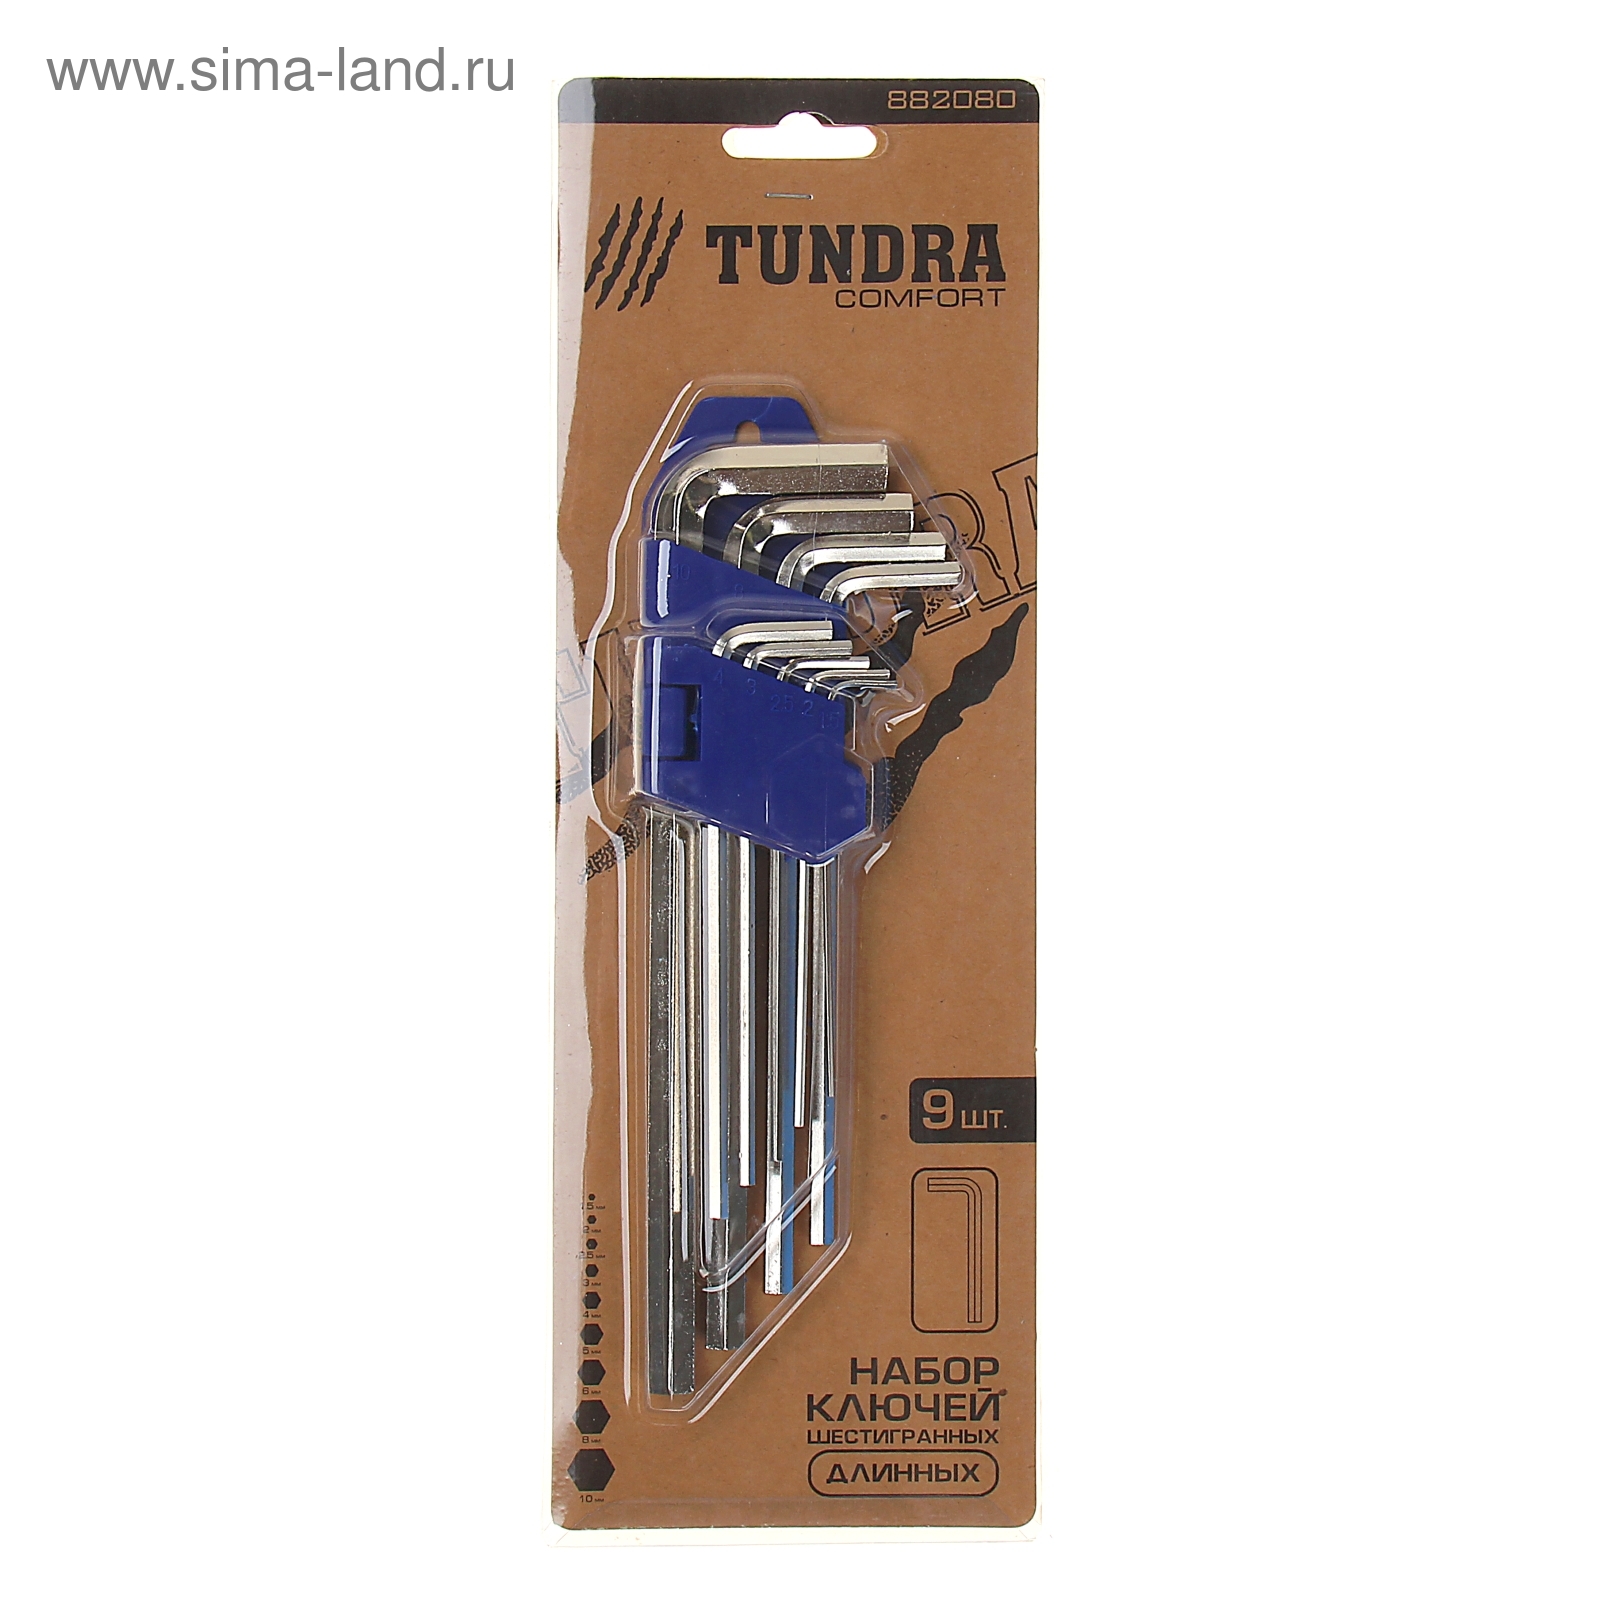 Набор ключей шестигранников TUNDRA comfort, 1.5 - 10 мм 9 штук, длинные